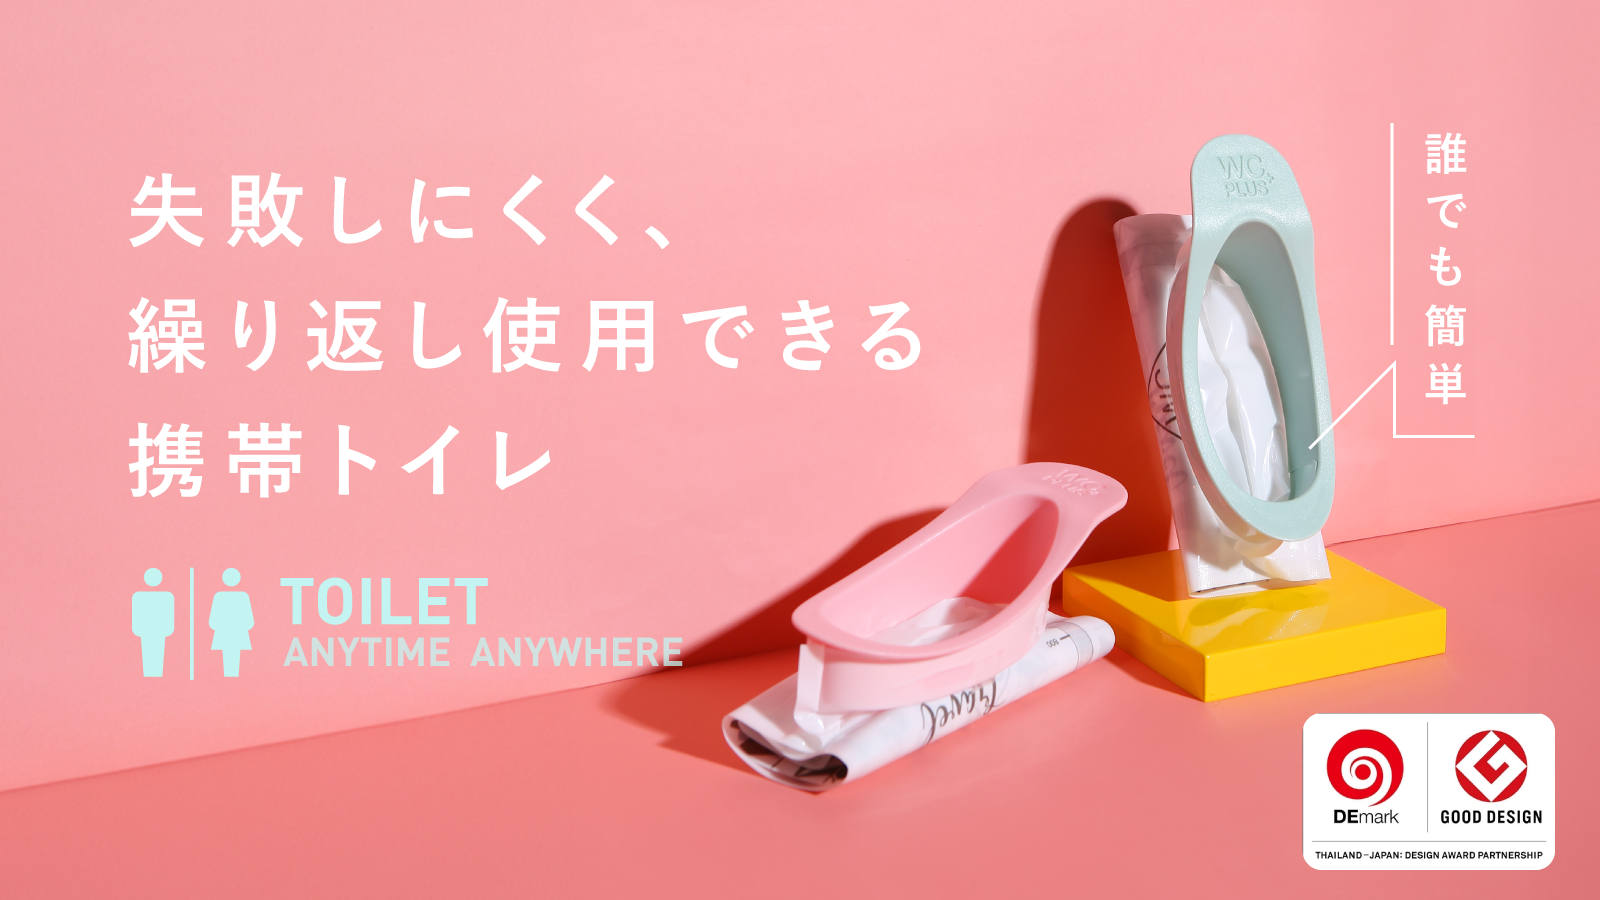 人間工学に基づいた携帯トイレが日本初上陸！
「liberloo(リバルー)」先行販売開始